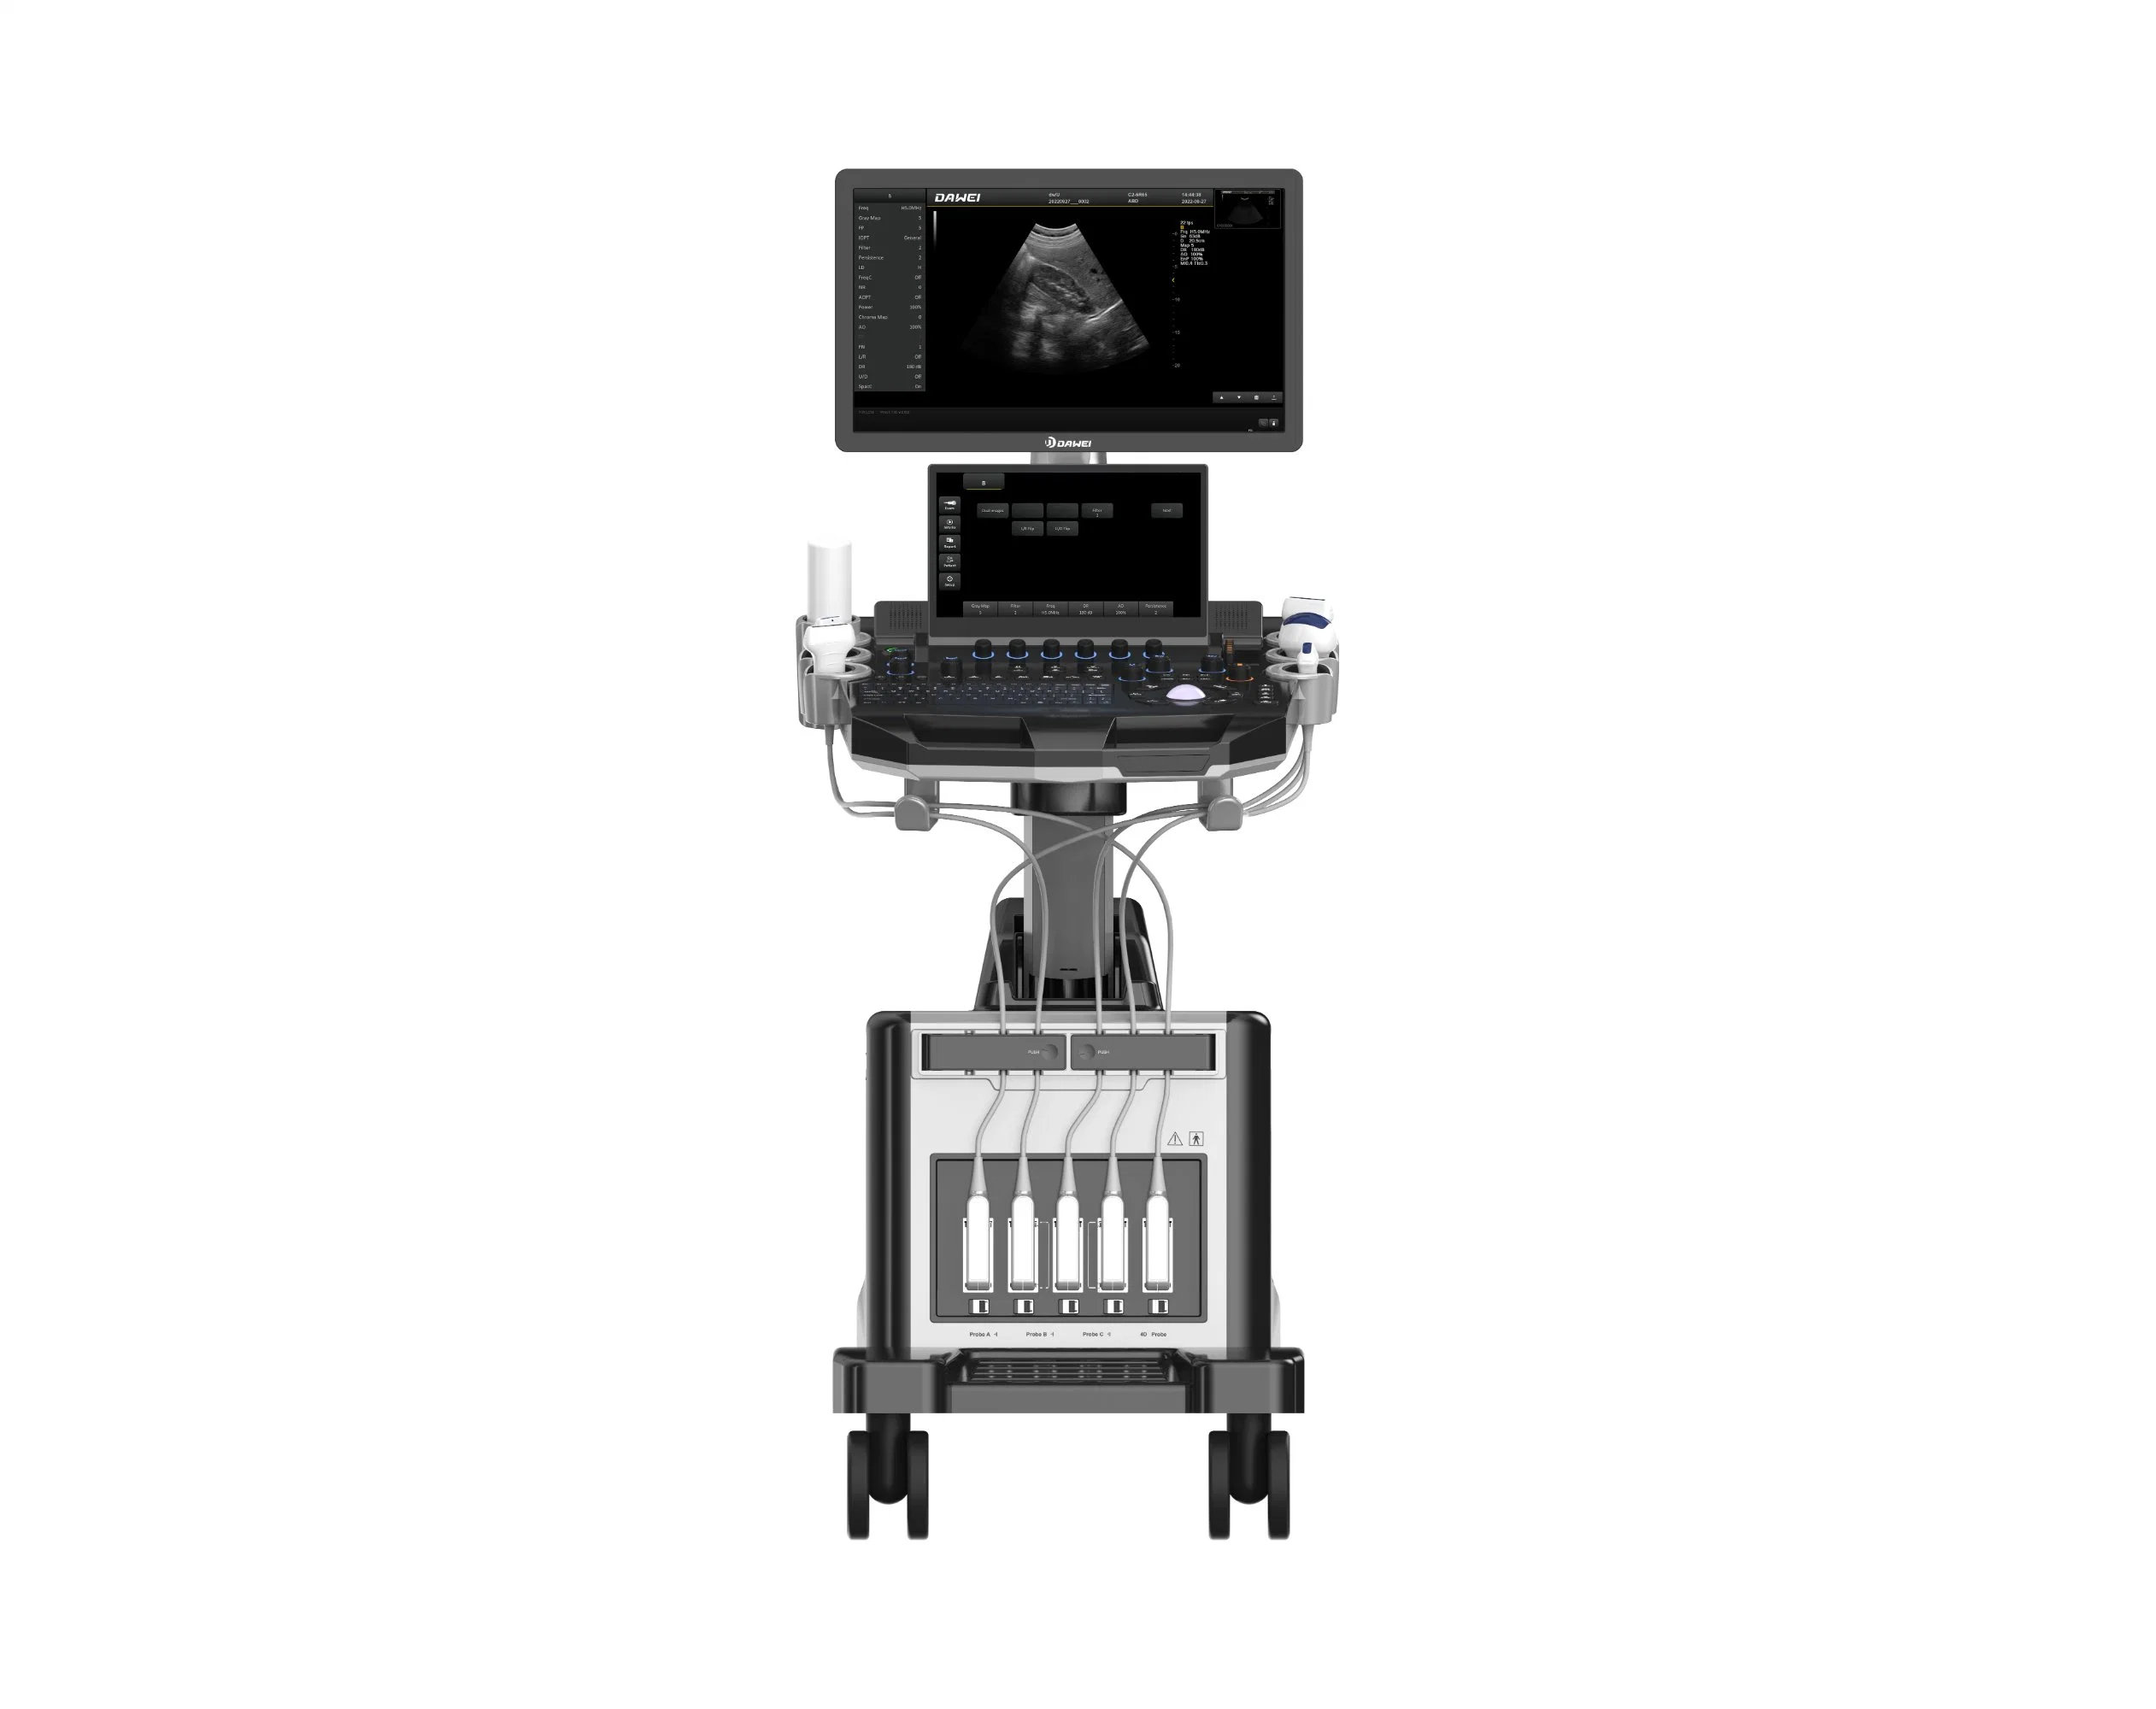 Dawei promueve principalmente el instrumento de diagnóstico ultrasónico digital completo para Obstetricia y Ginecología